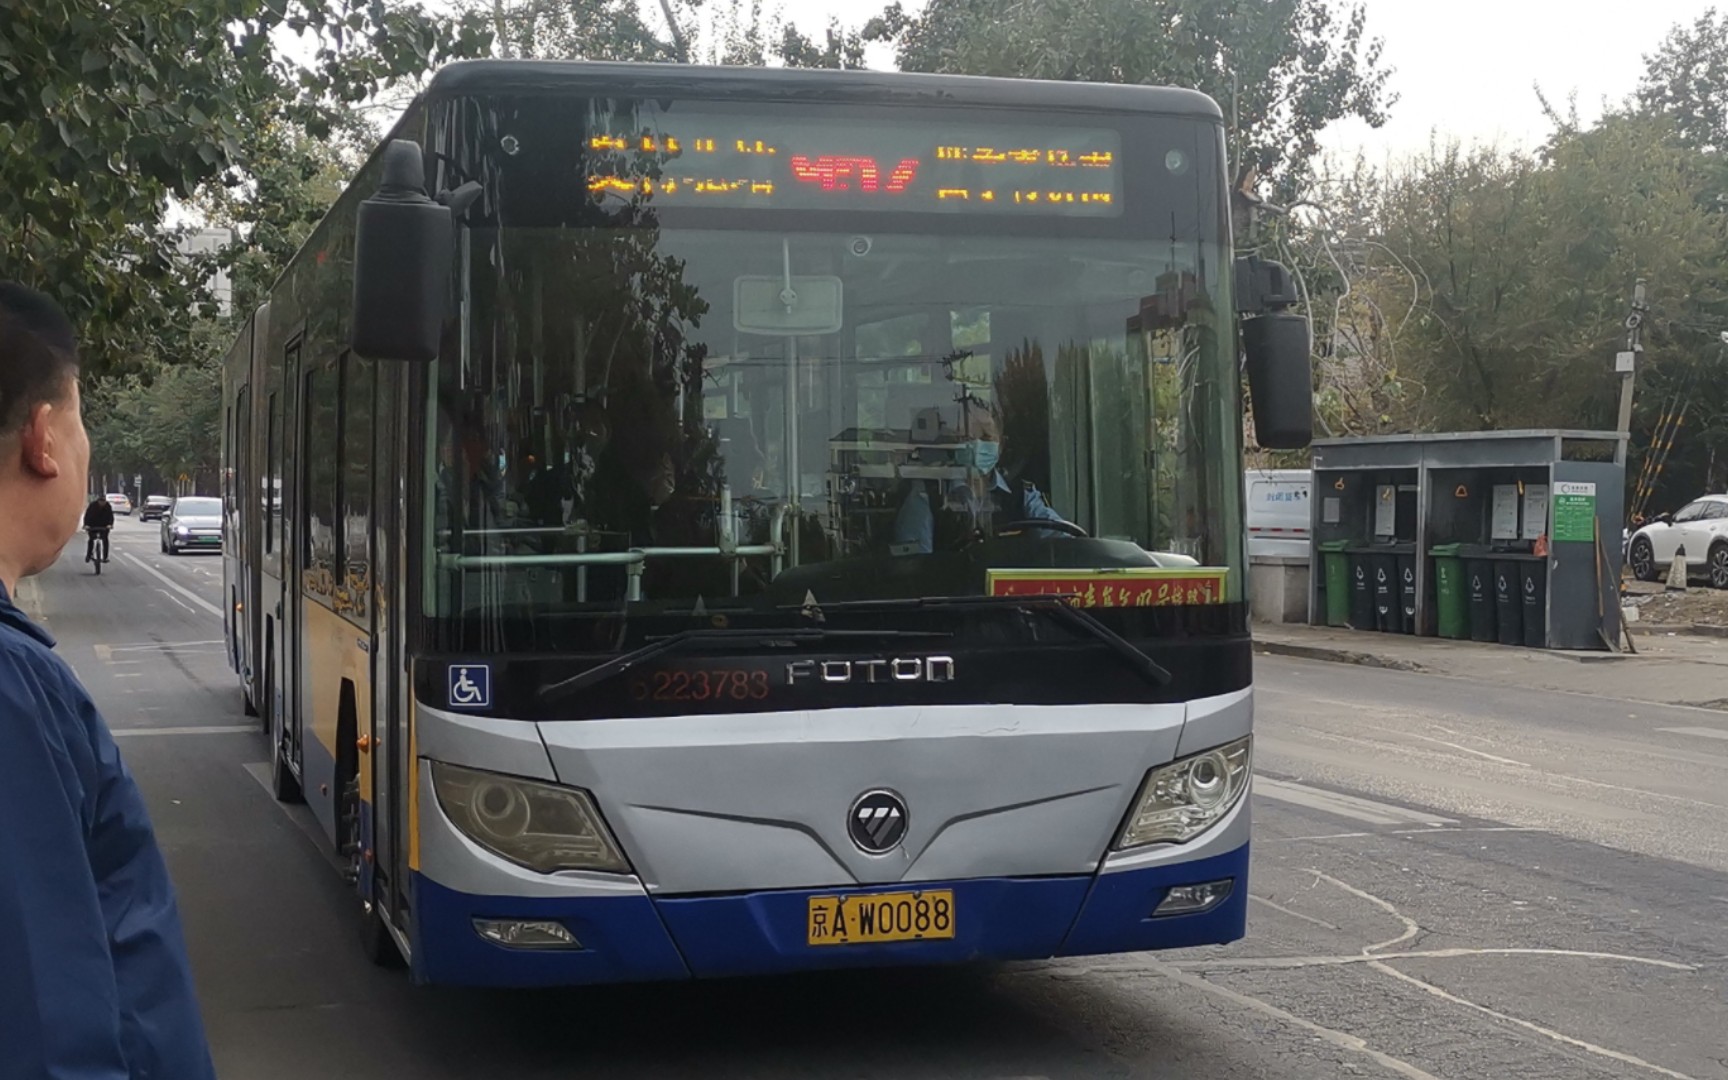 天津952路公交车路线图图片